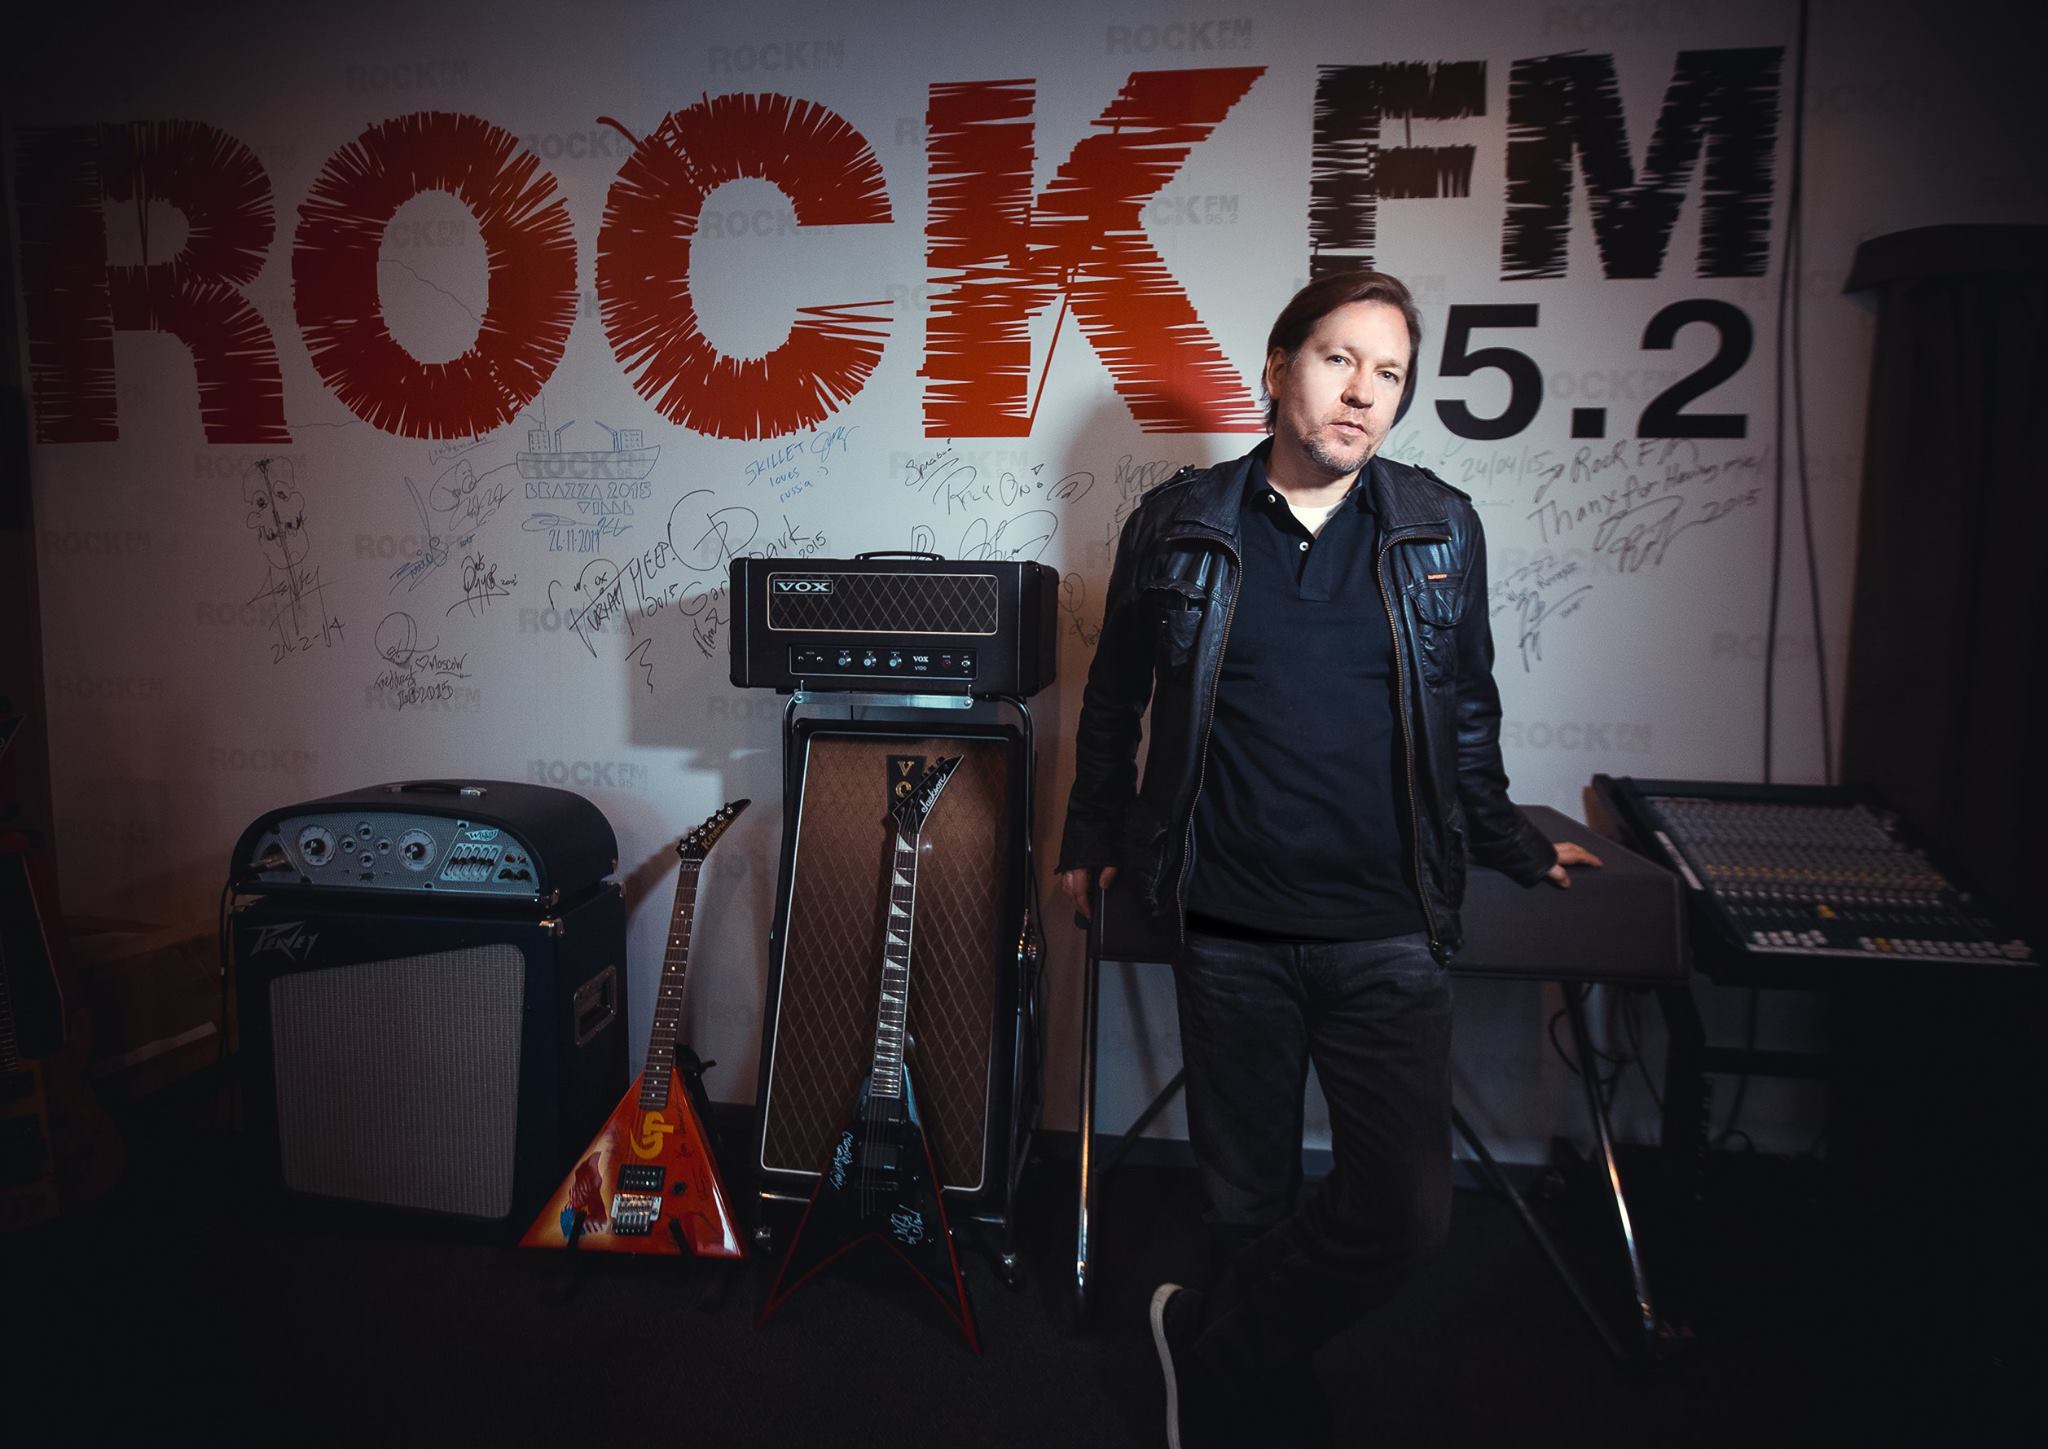 На фото - радиоведущий Евгений Штольц, радиостанций Rock FM